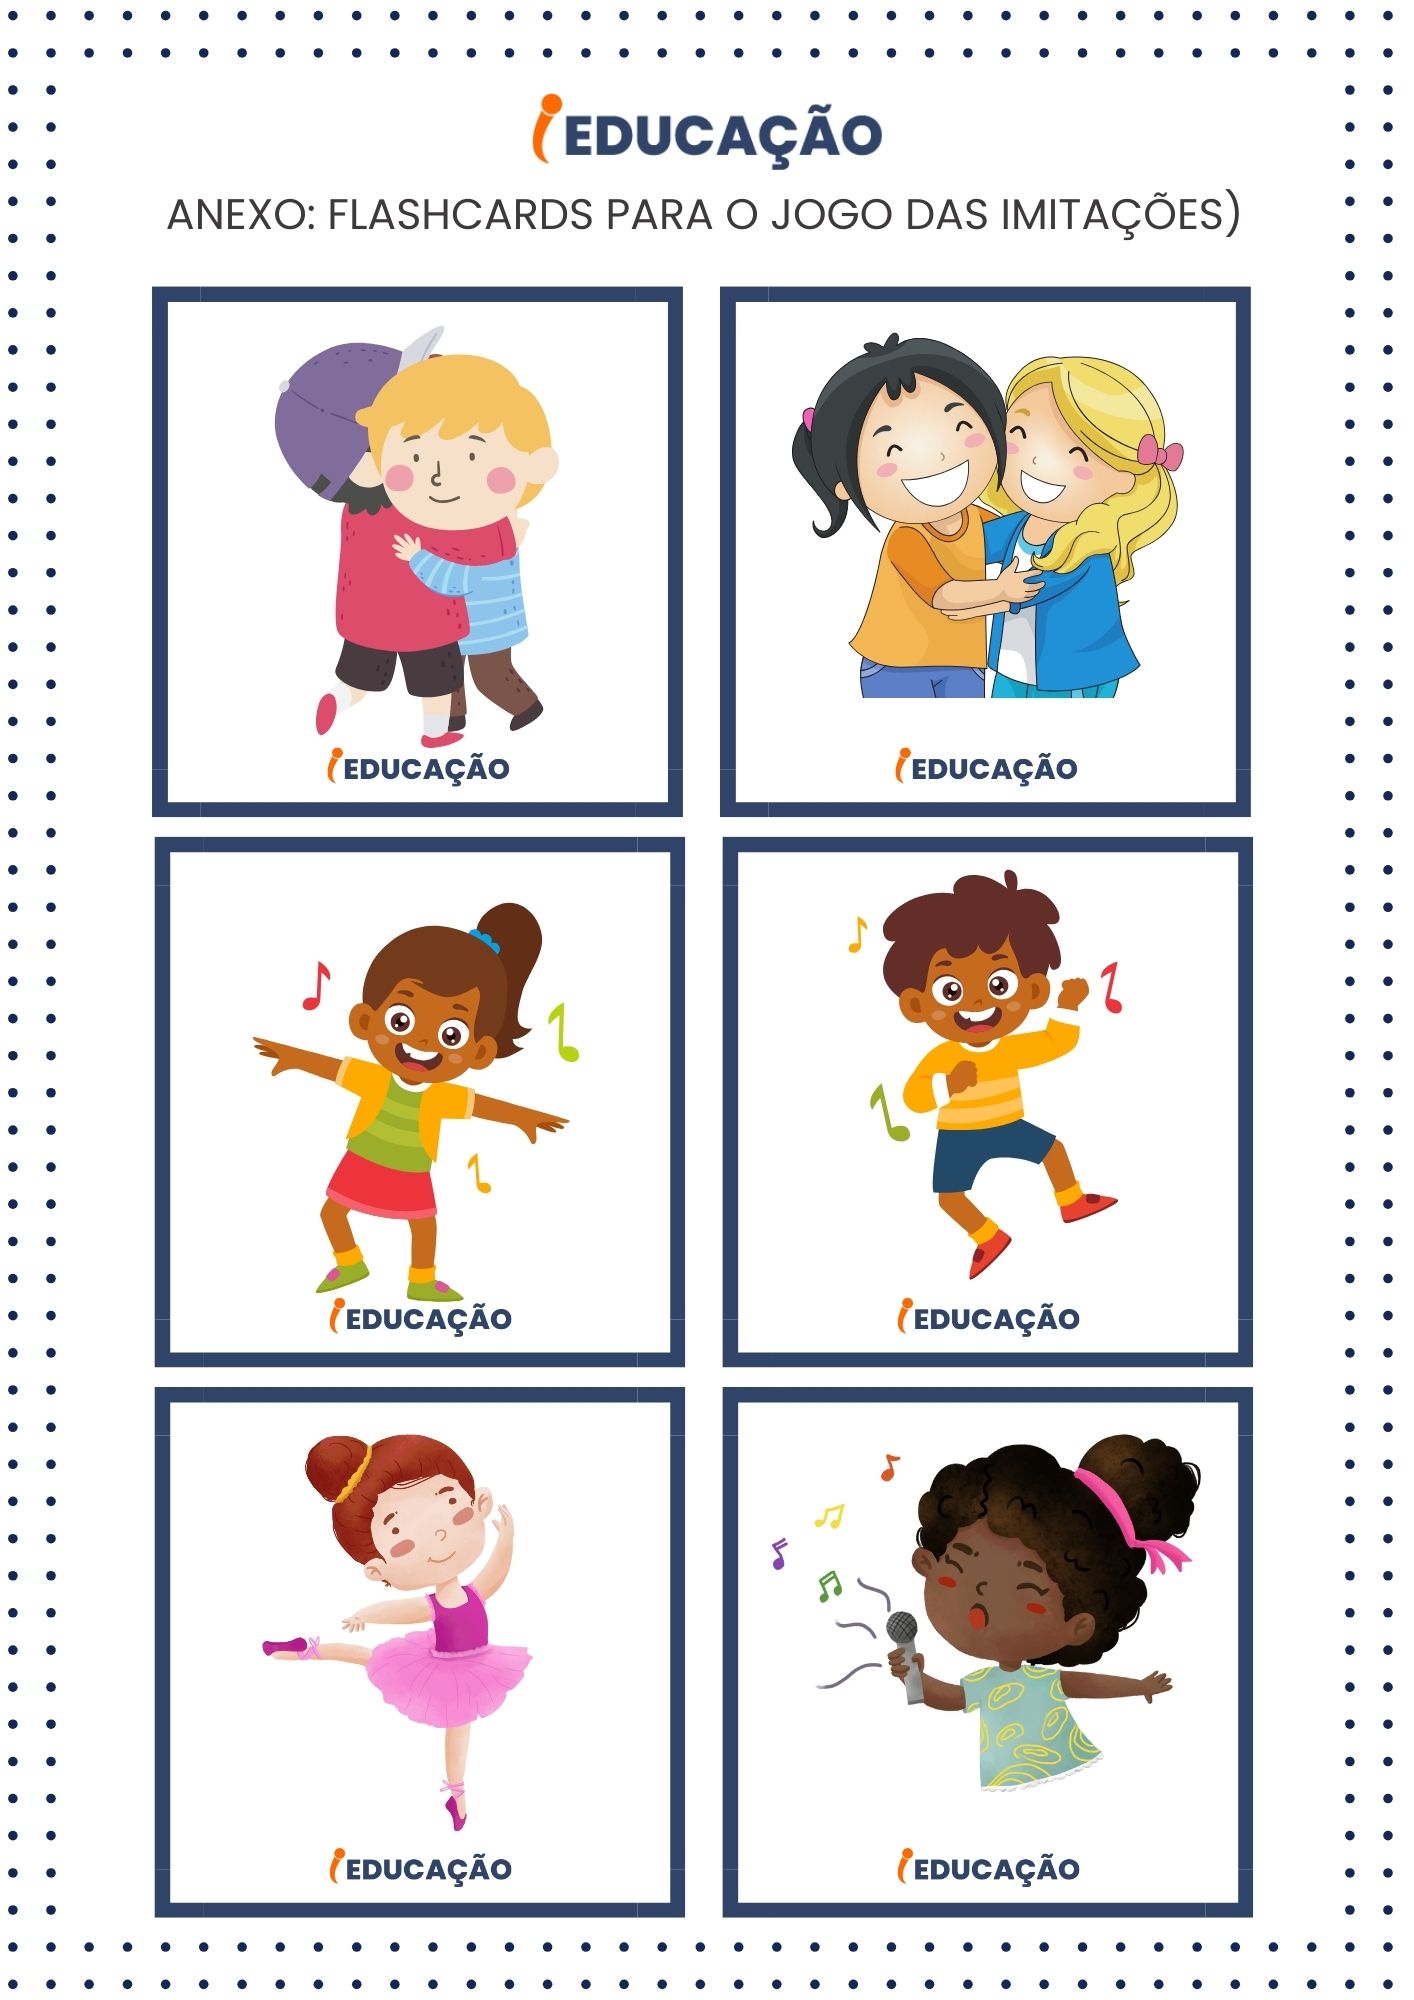 Jogo de imitação para Educação Infantil - Corpo, Gestos e Movimento - Flashcards iEducação - Anexo de Plano de Aula iEducação (3).jpg